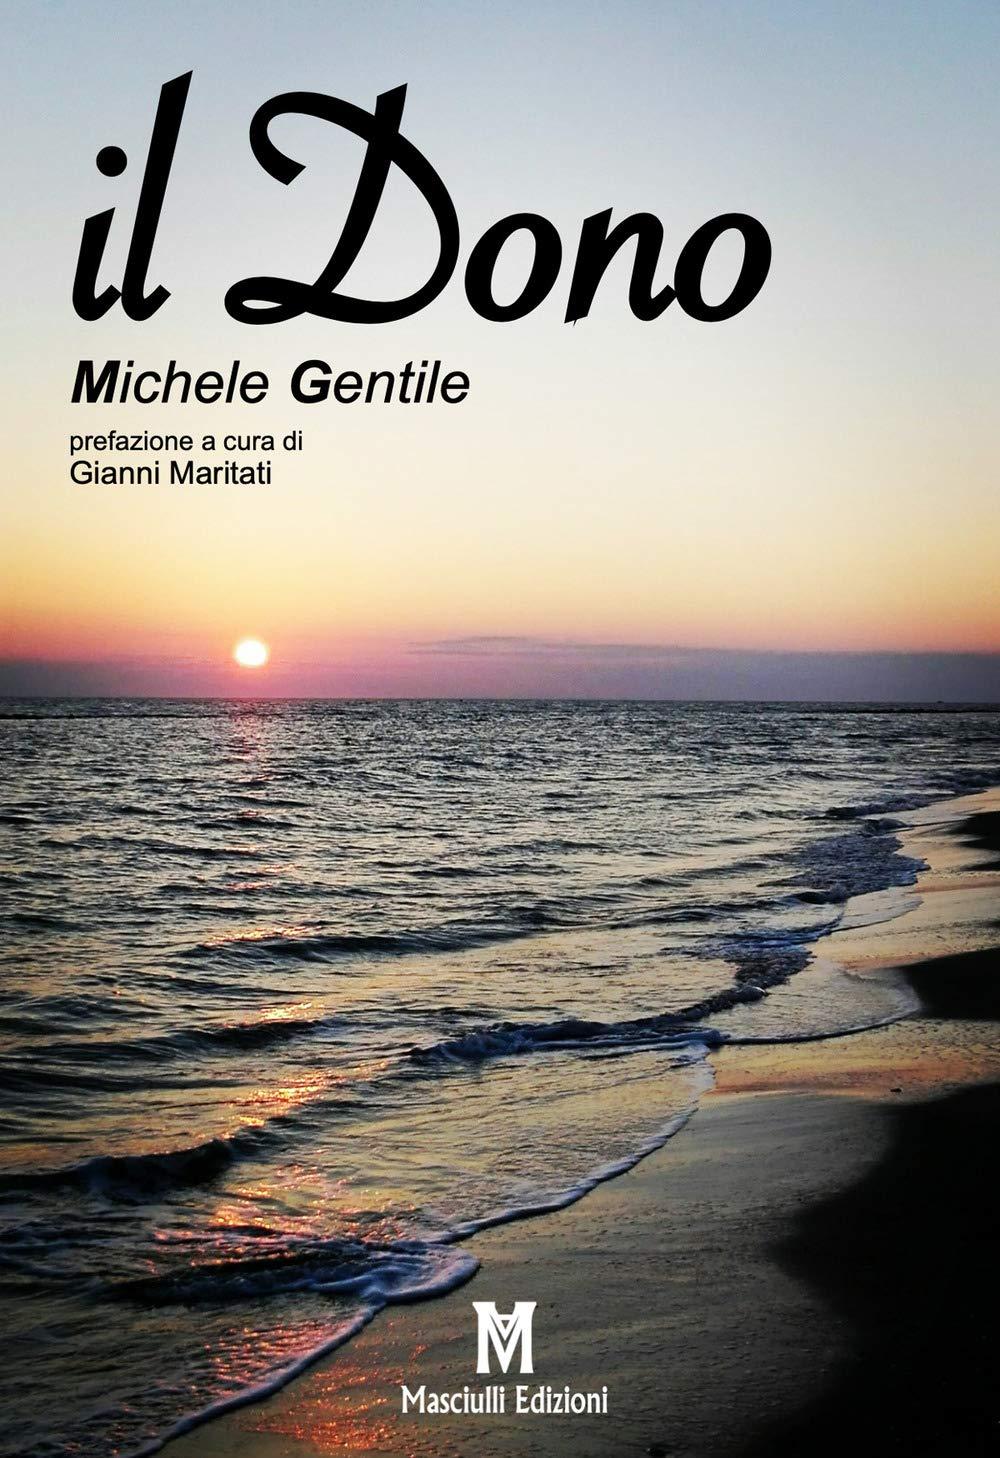 Libro "Il dono" di Michele Gentile